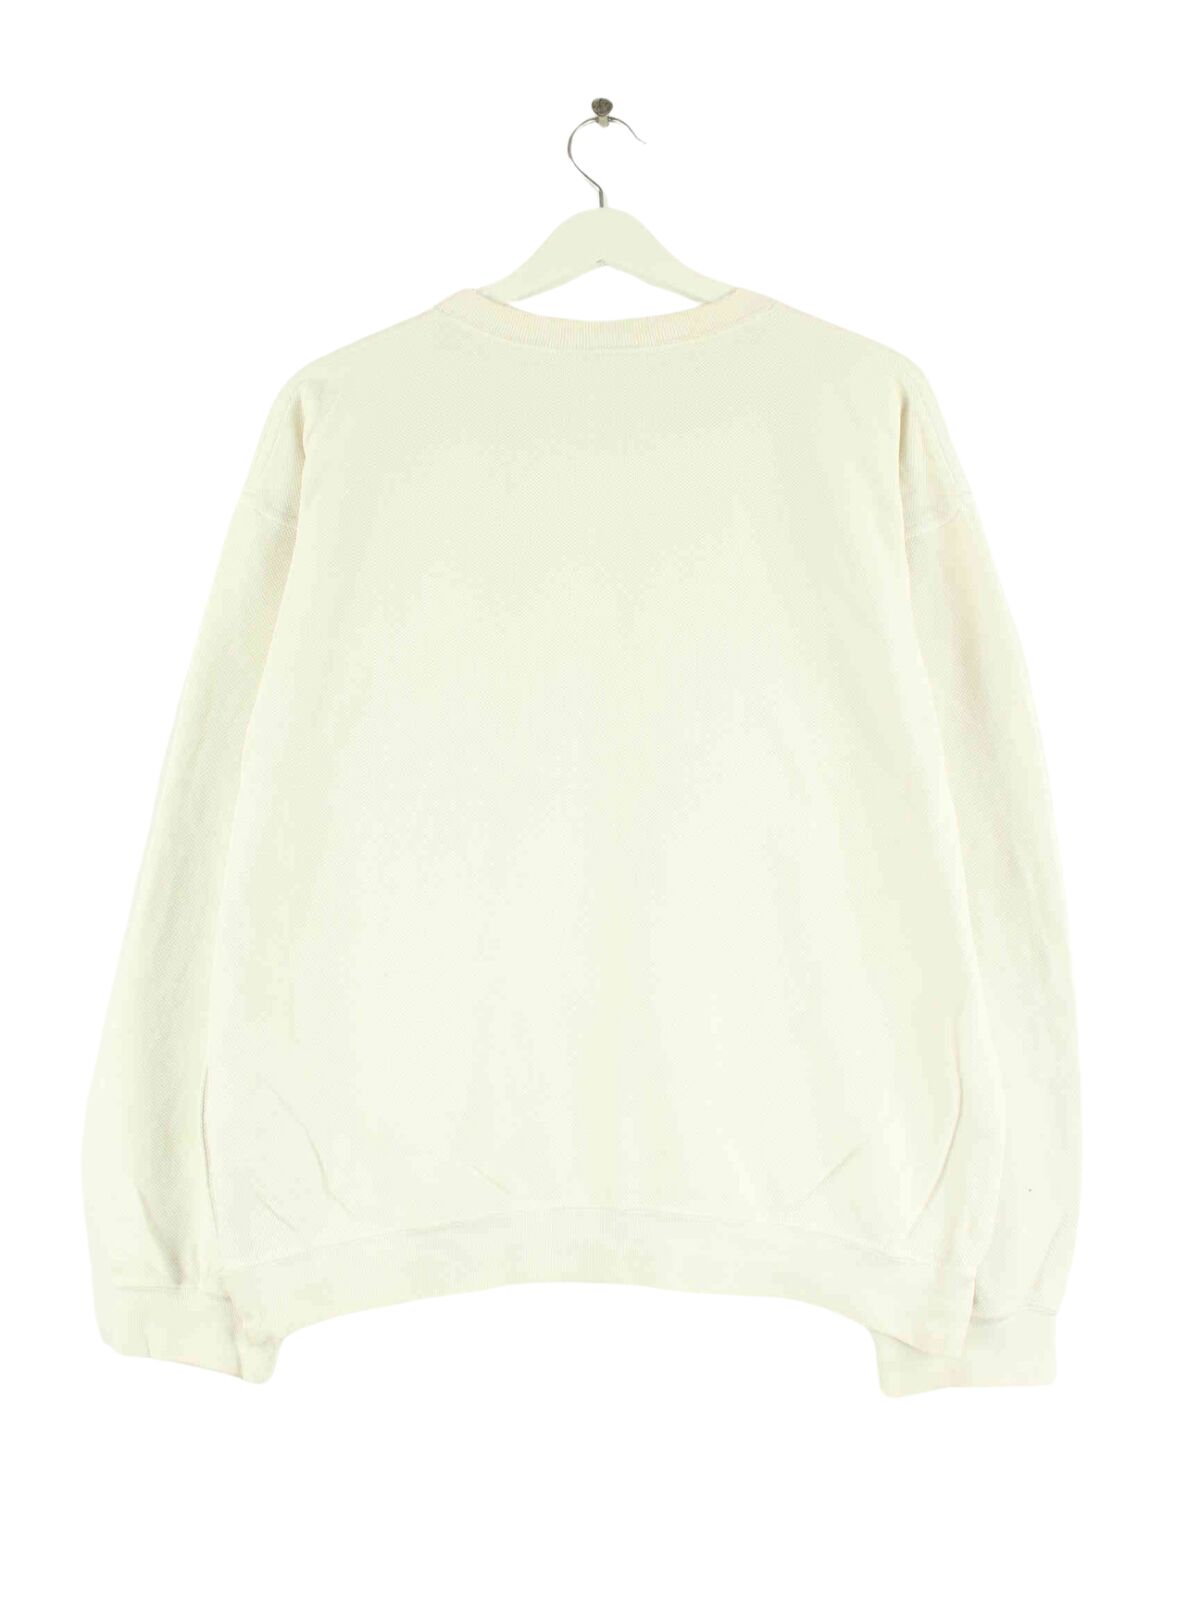 Lacoste Basic Sweater Beige M (back image)